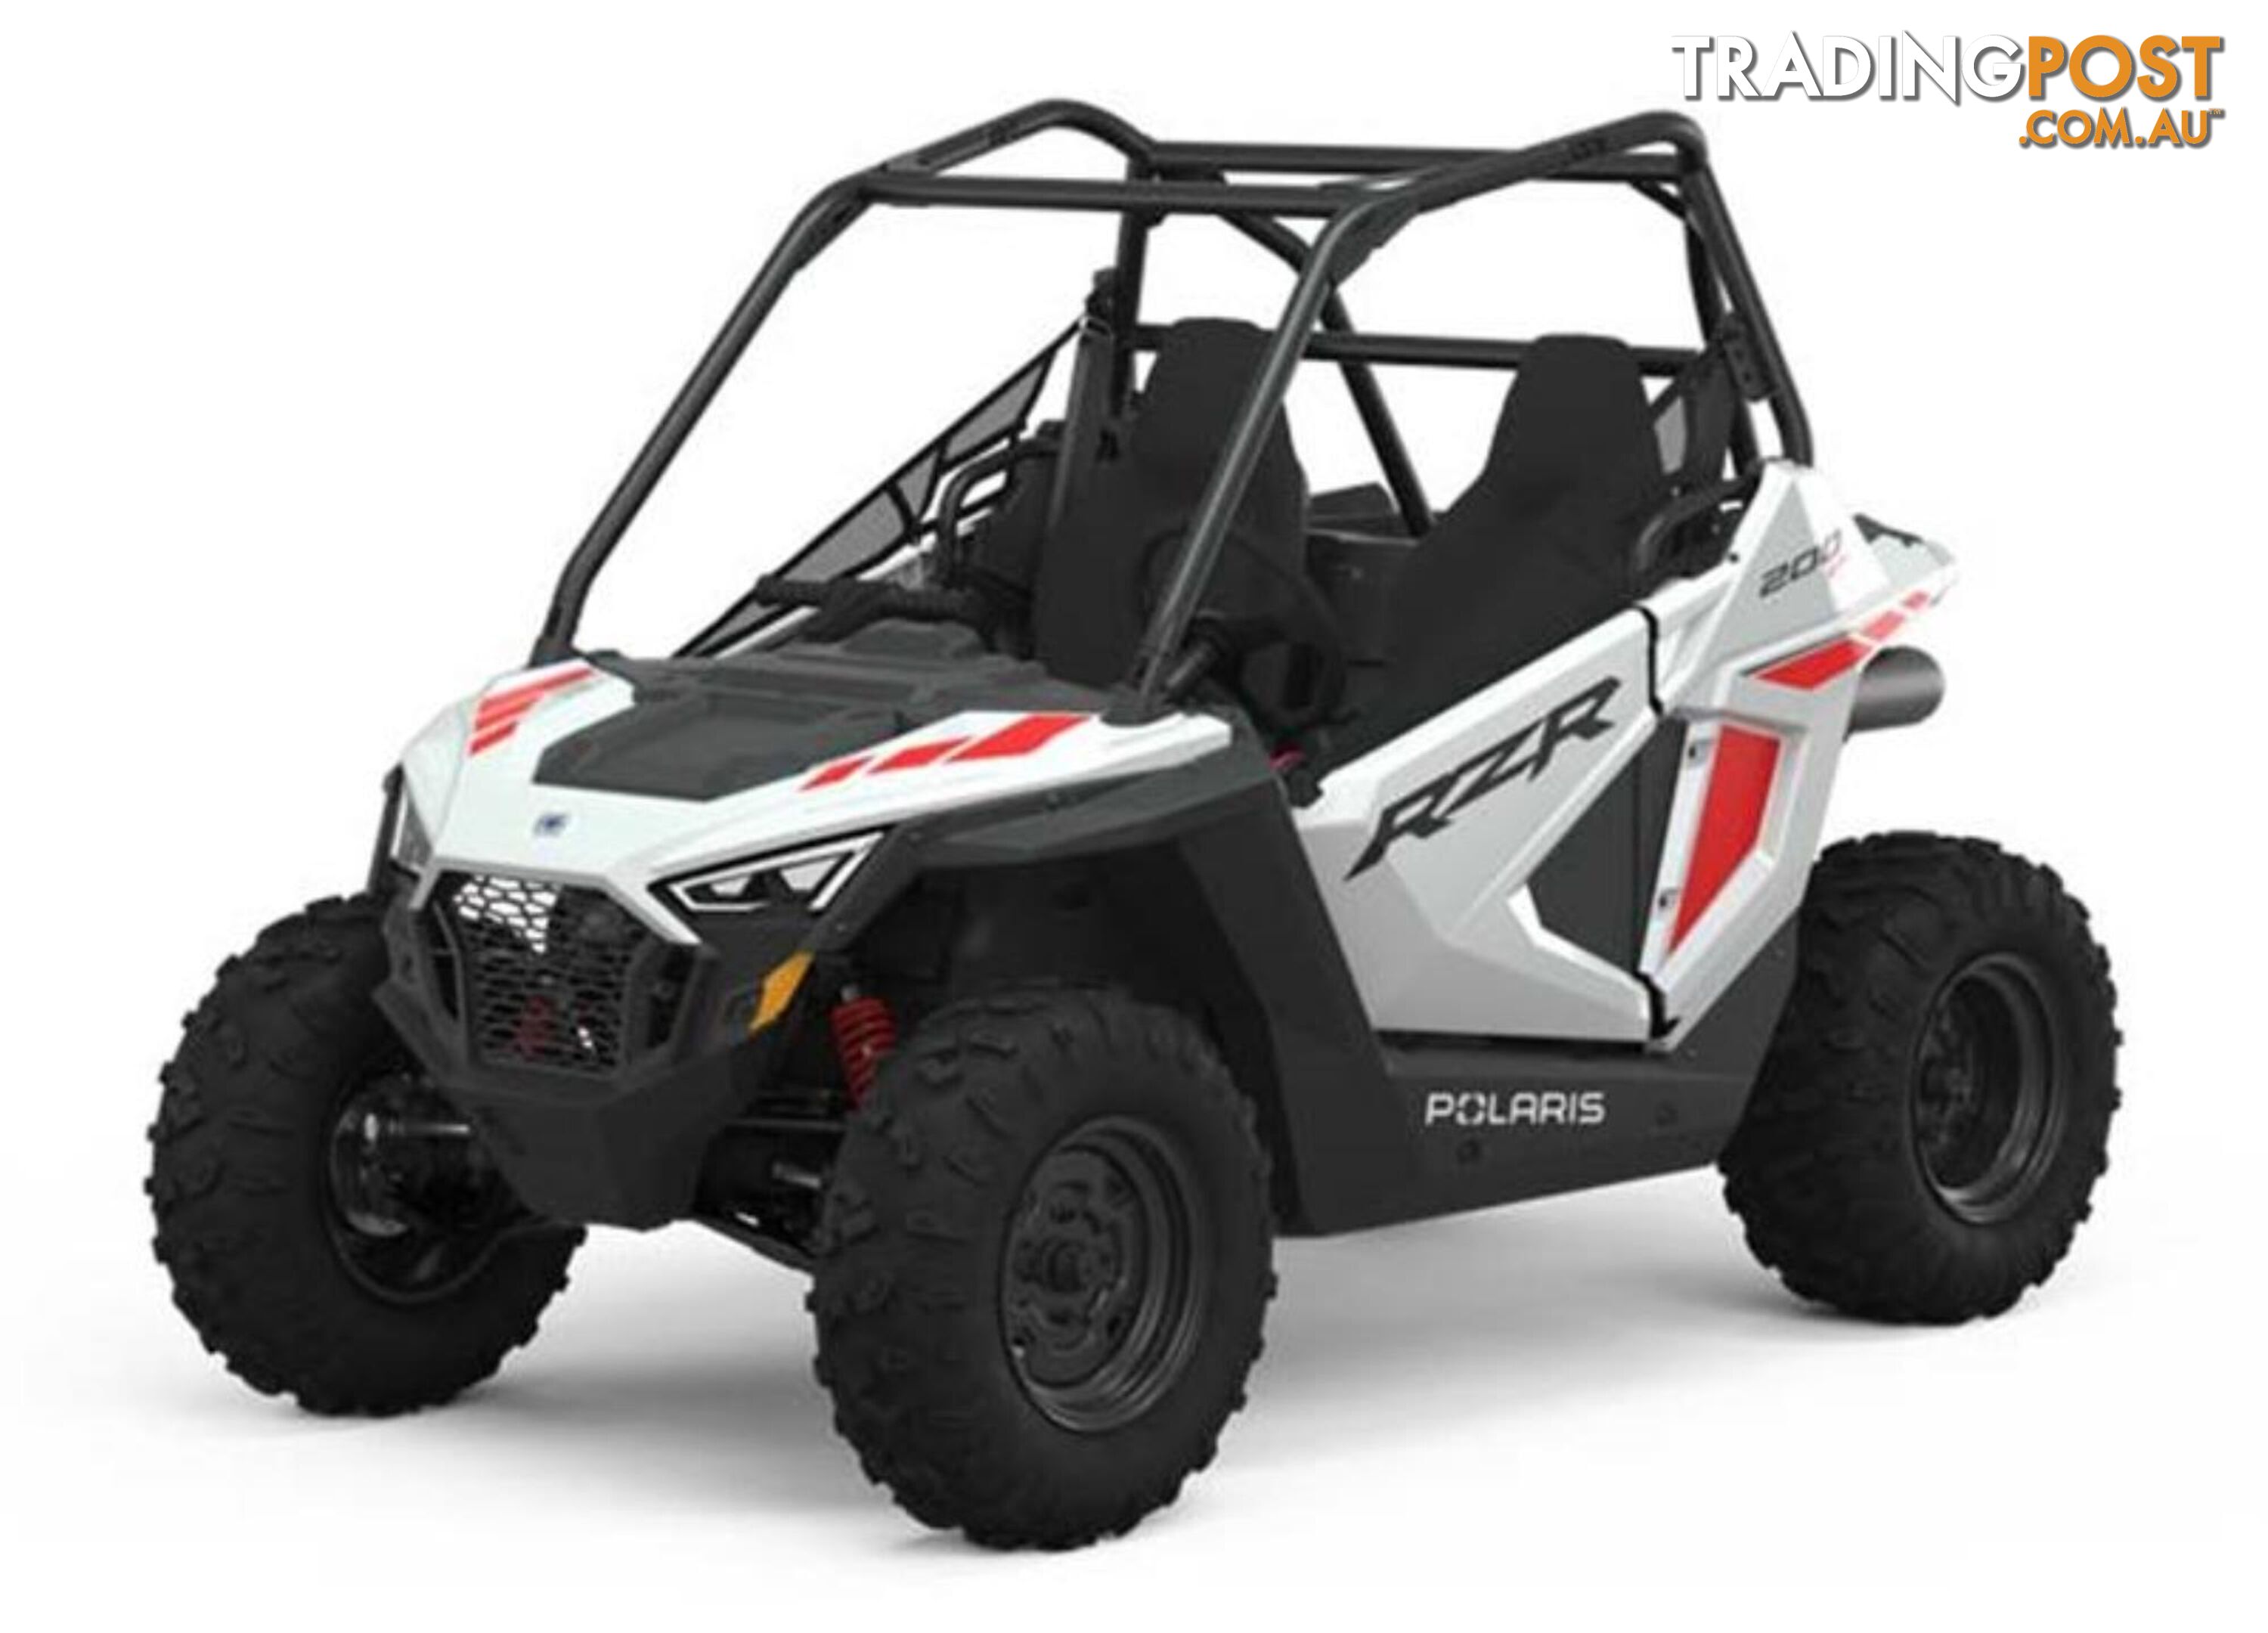 2023 POLARIS RZR200EFI   ATV